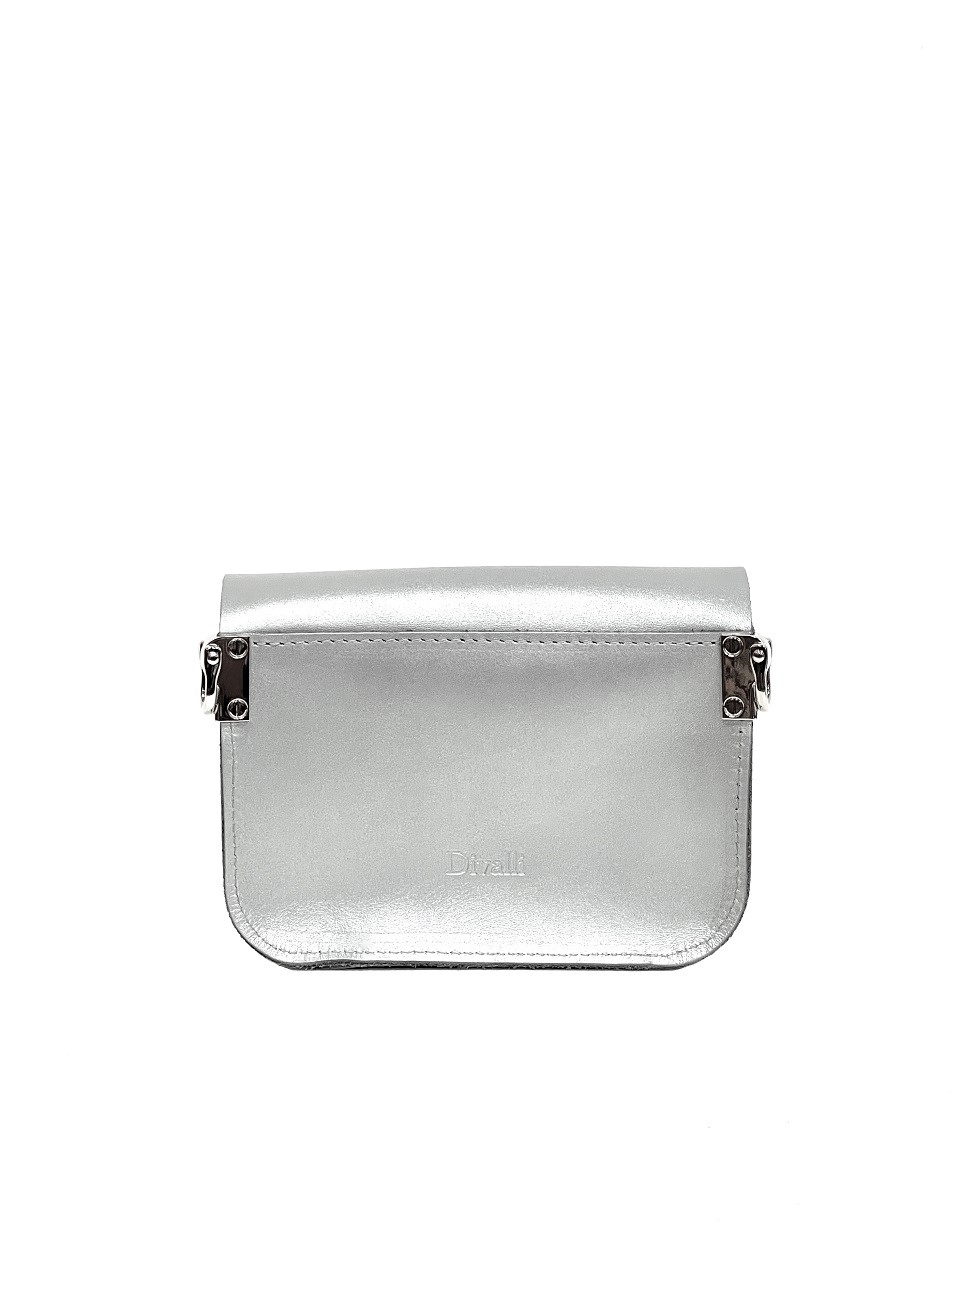 Женская поясная сумка из натуральной кожи серебристая A001 silver mini